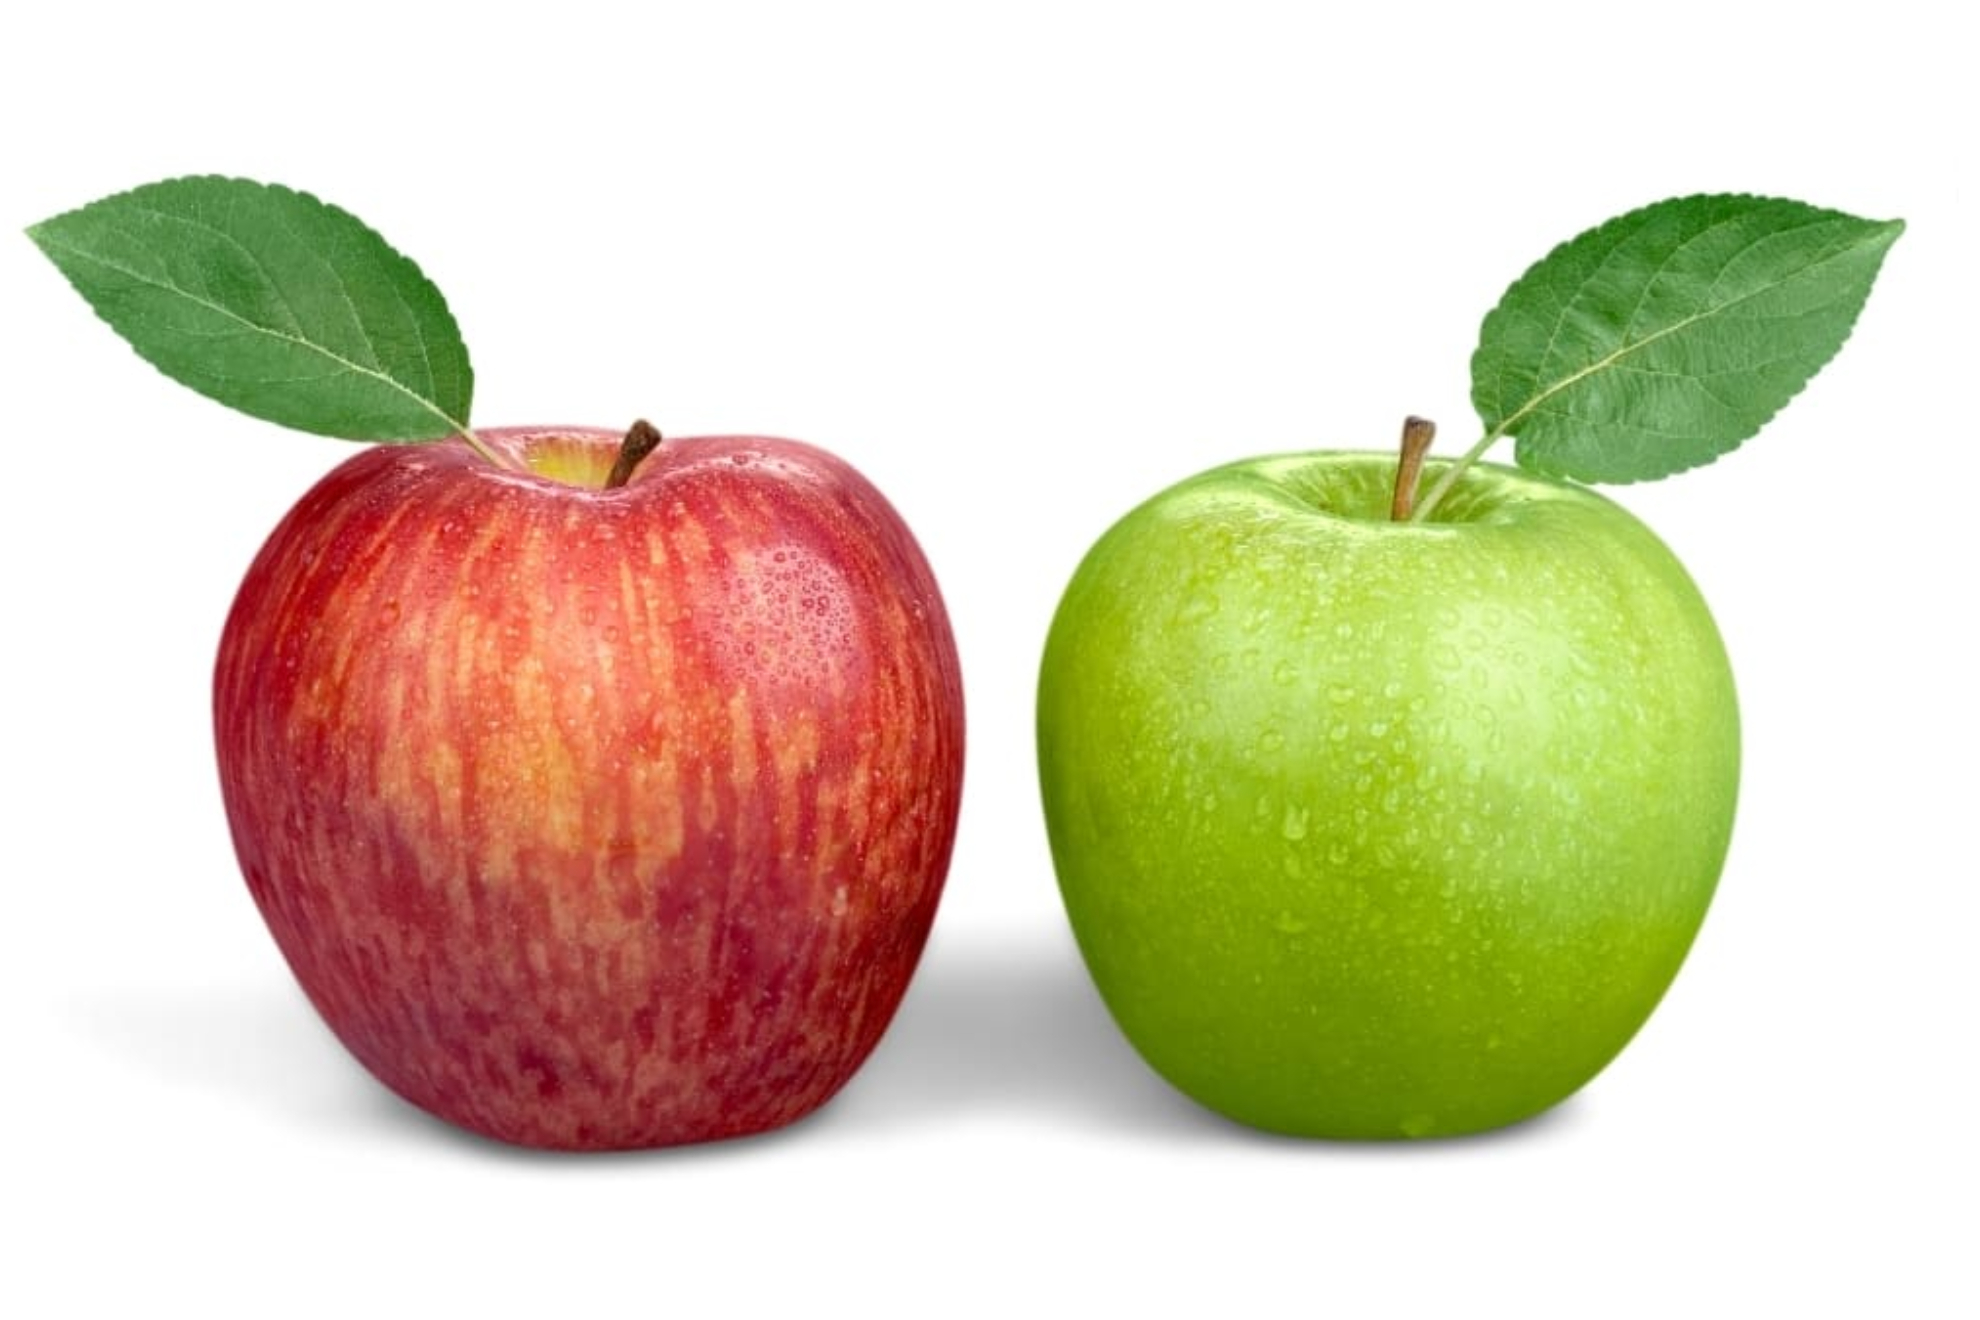 Manzana verde o manzana roja: cul es mejor?